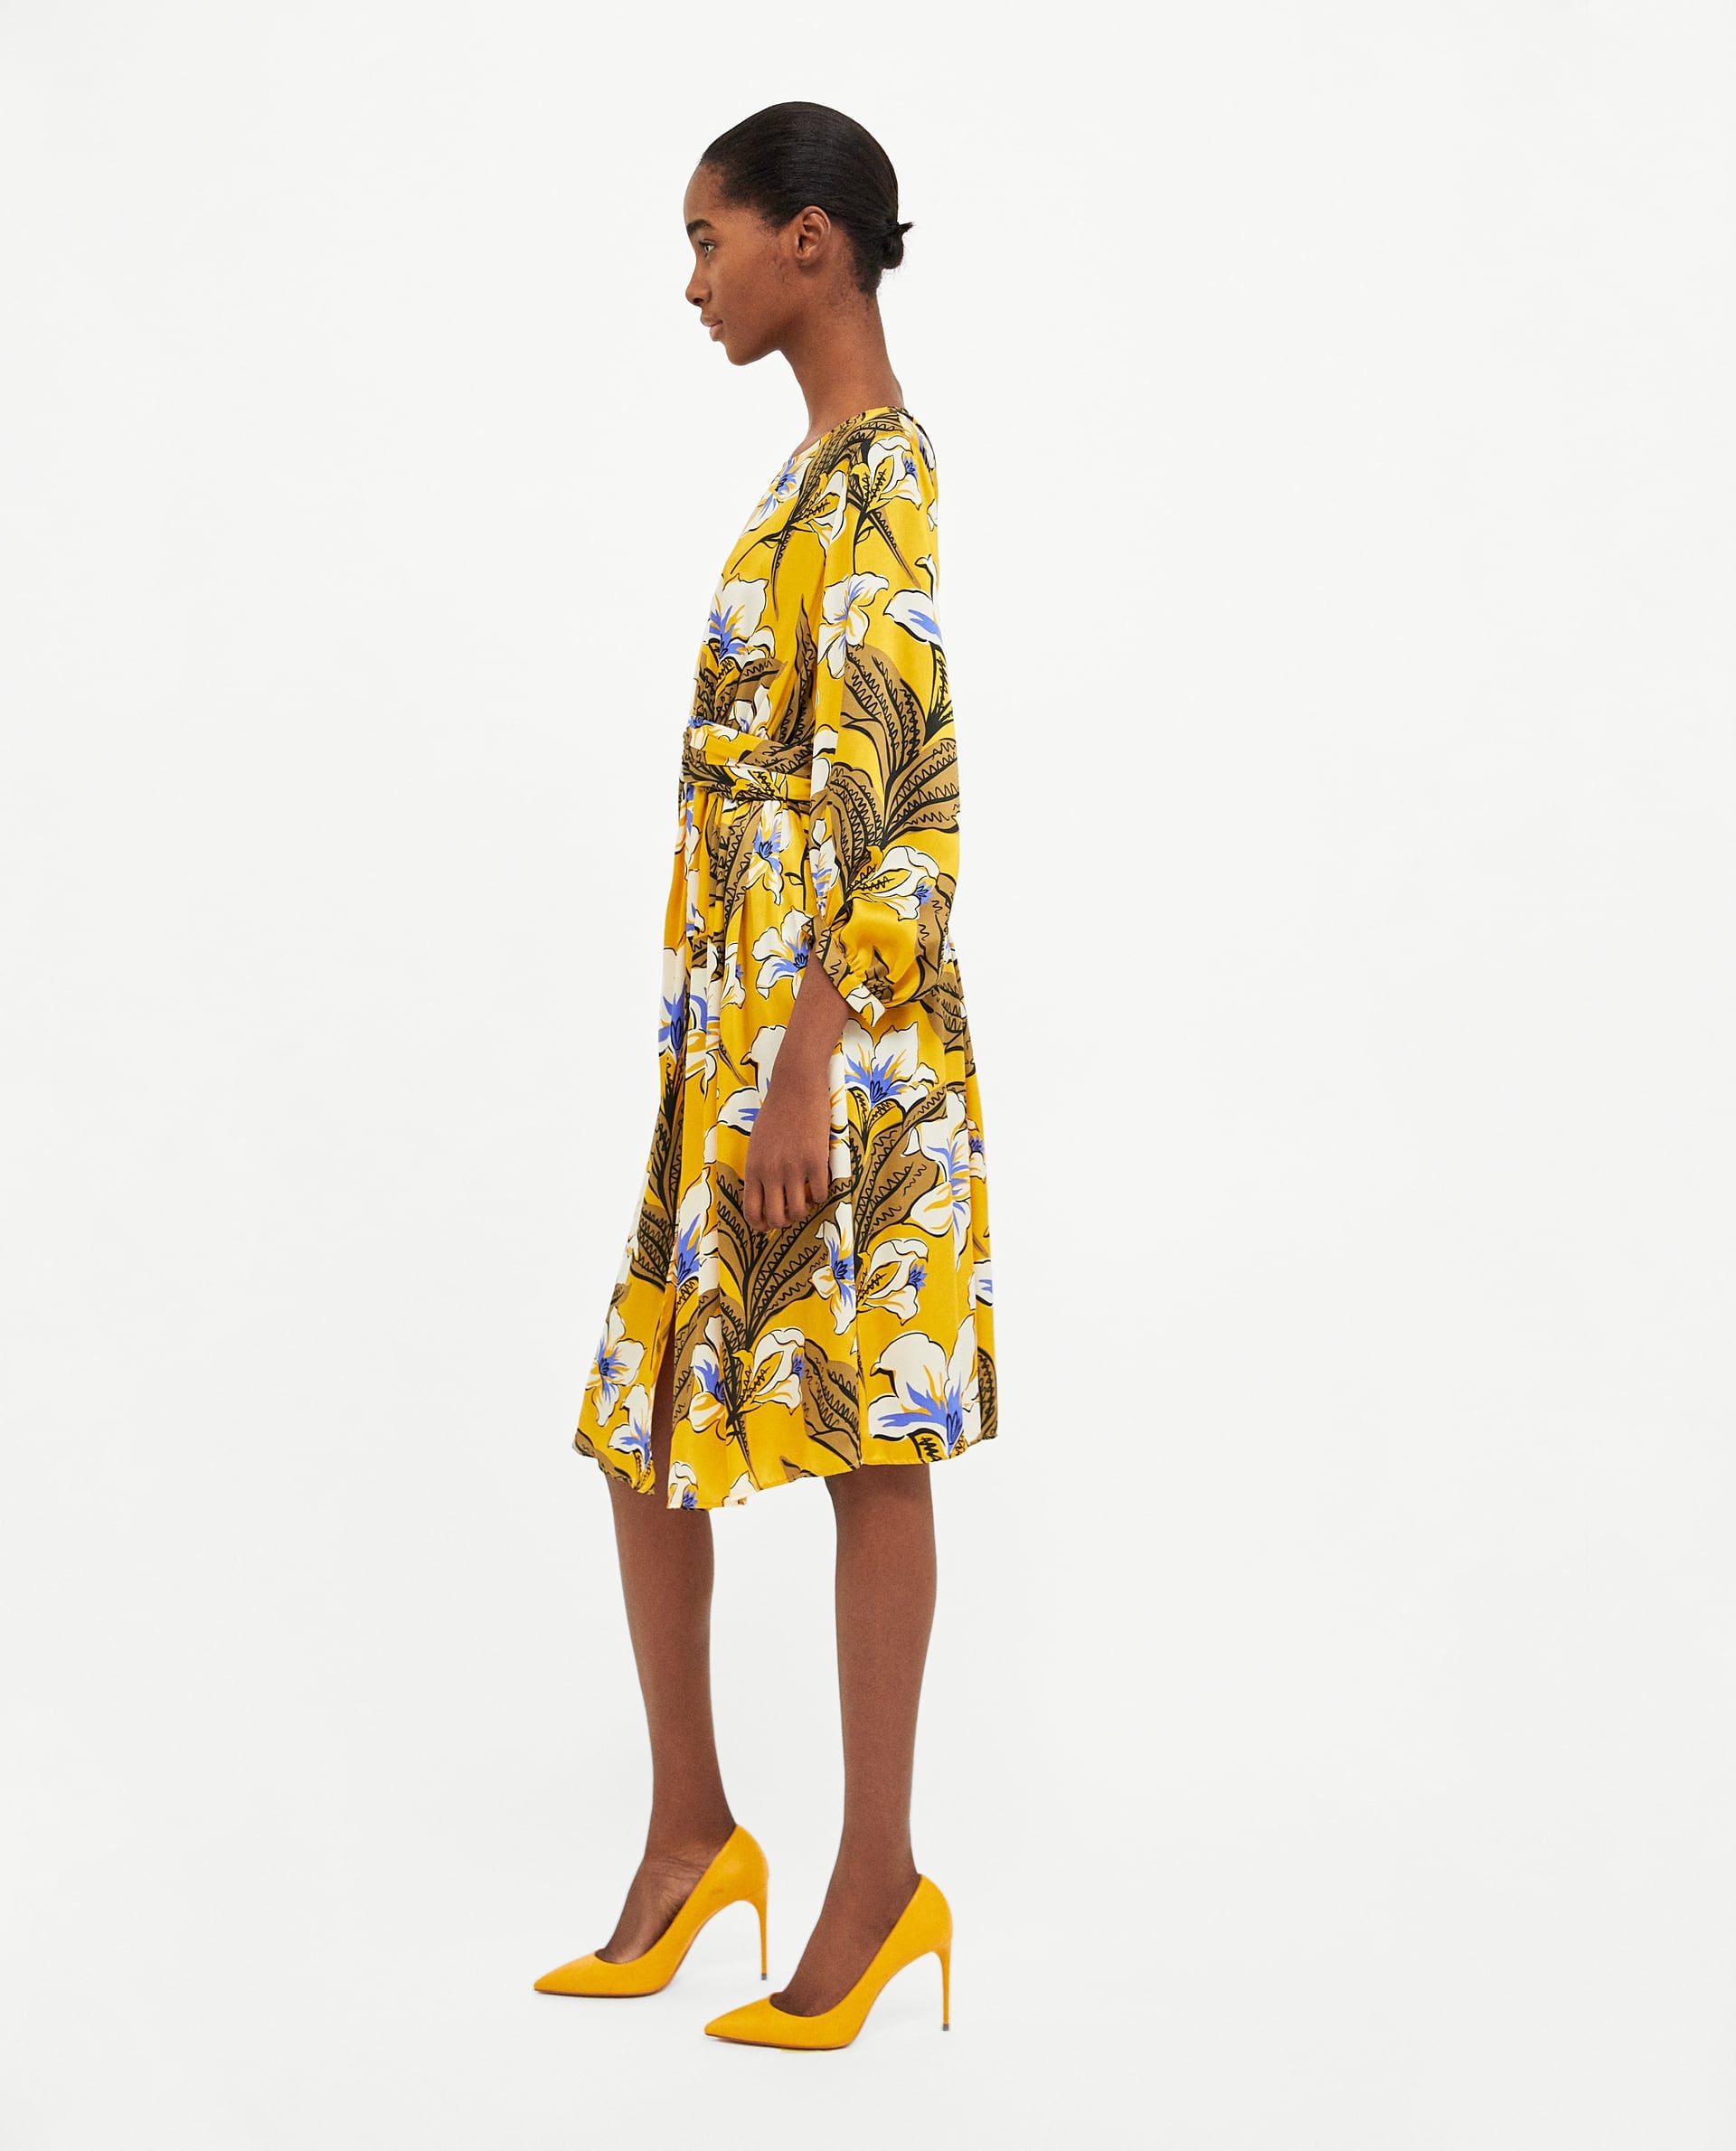 zara yellow floral print dress